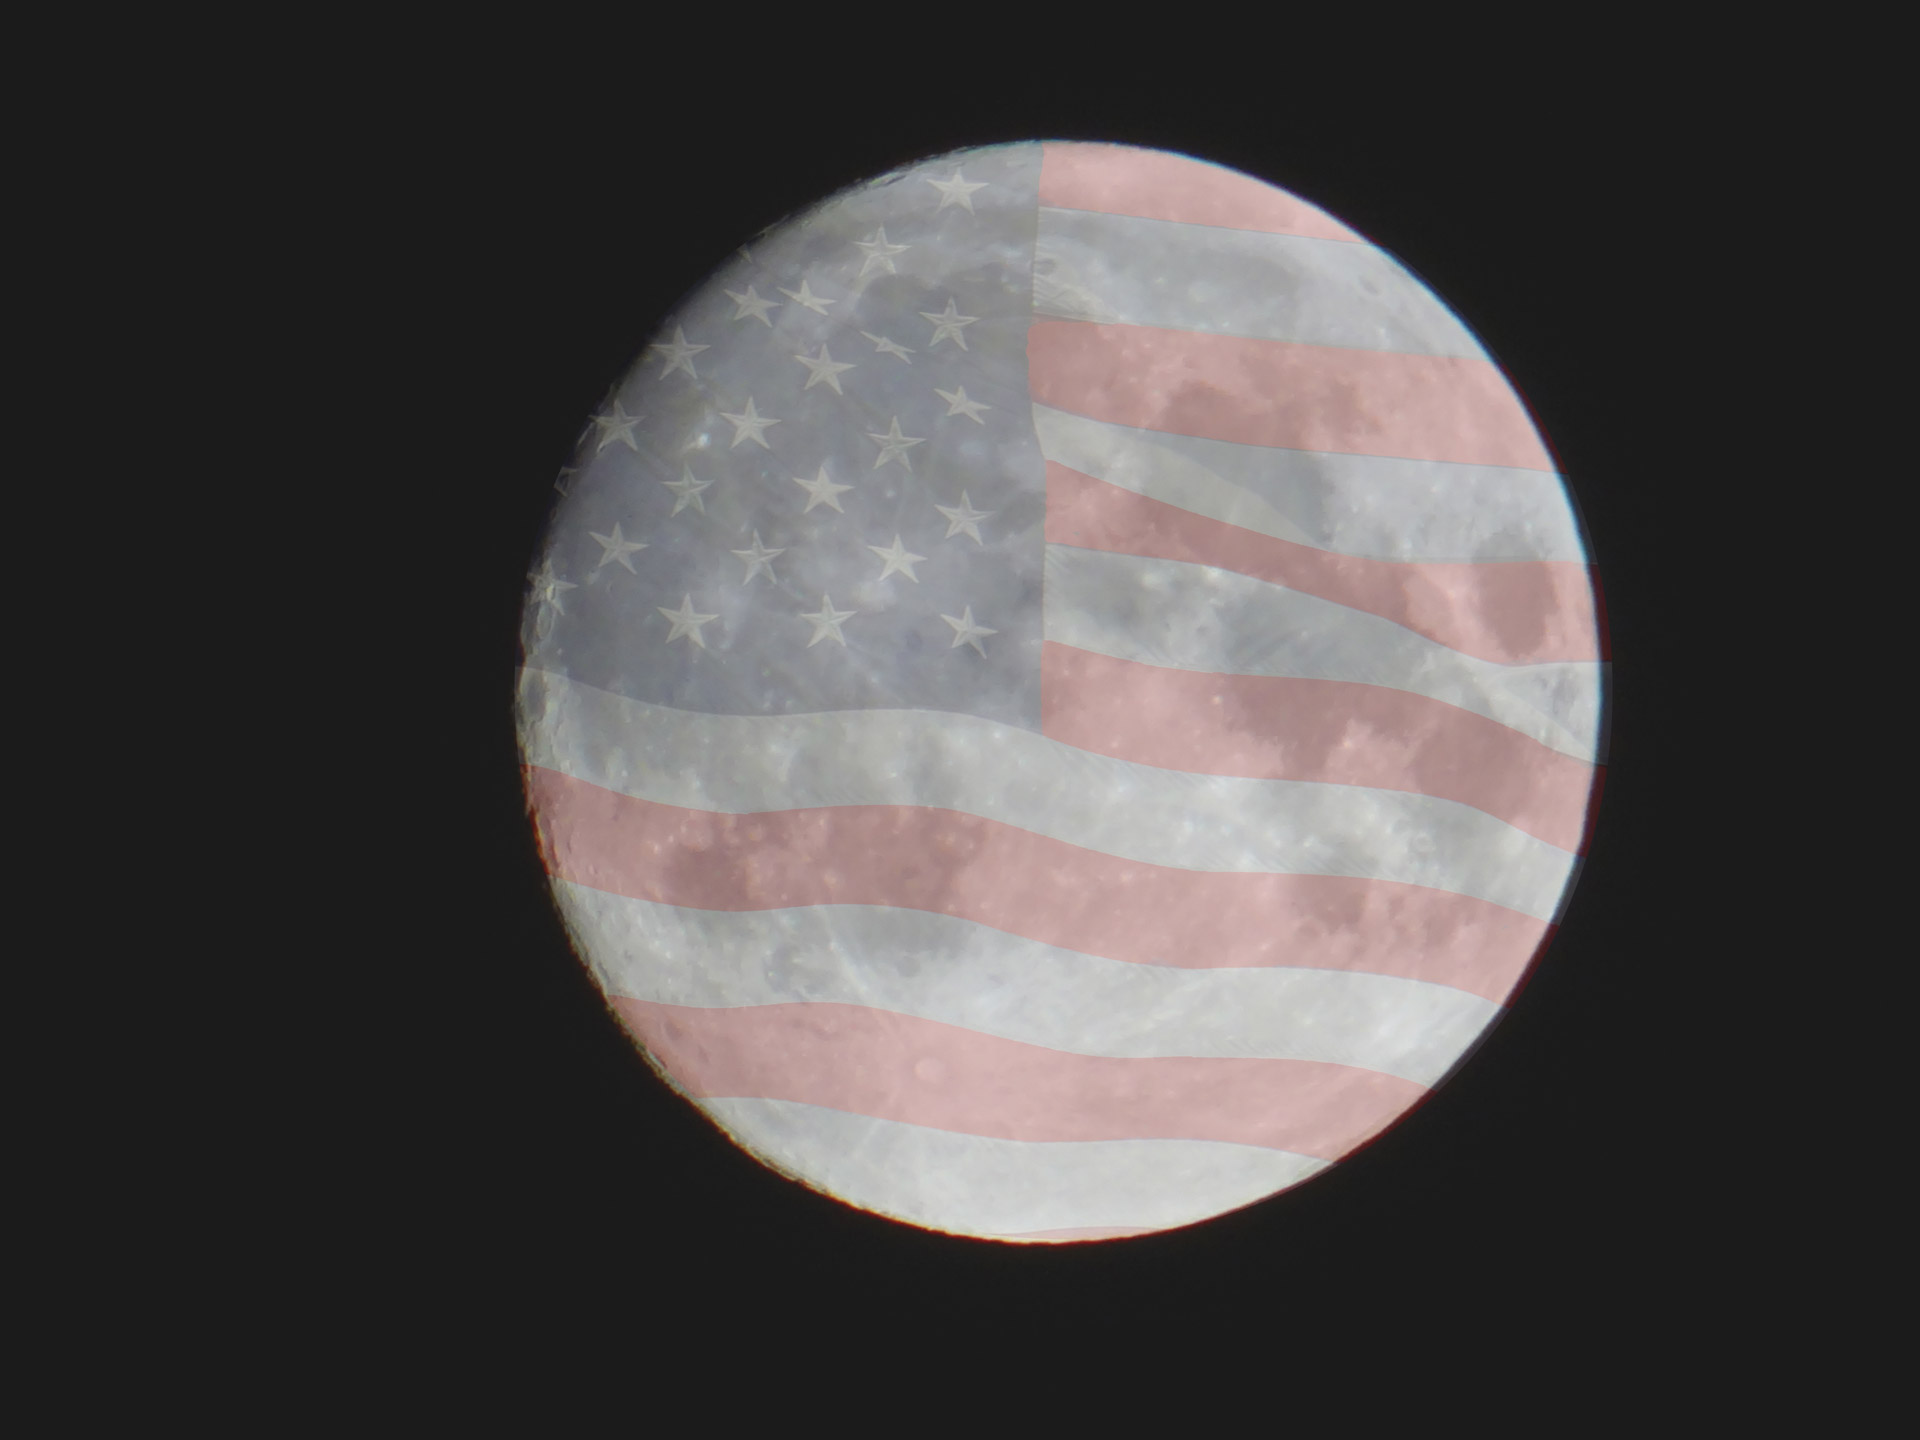 vague image of flag photoshop flag moon free photo